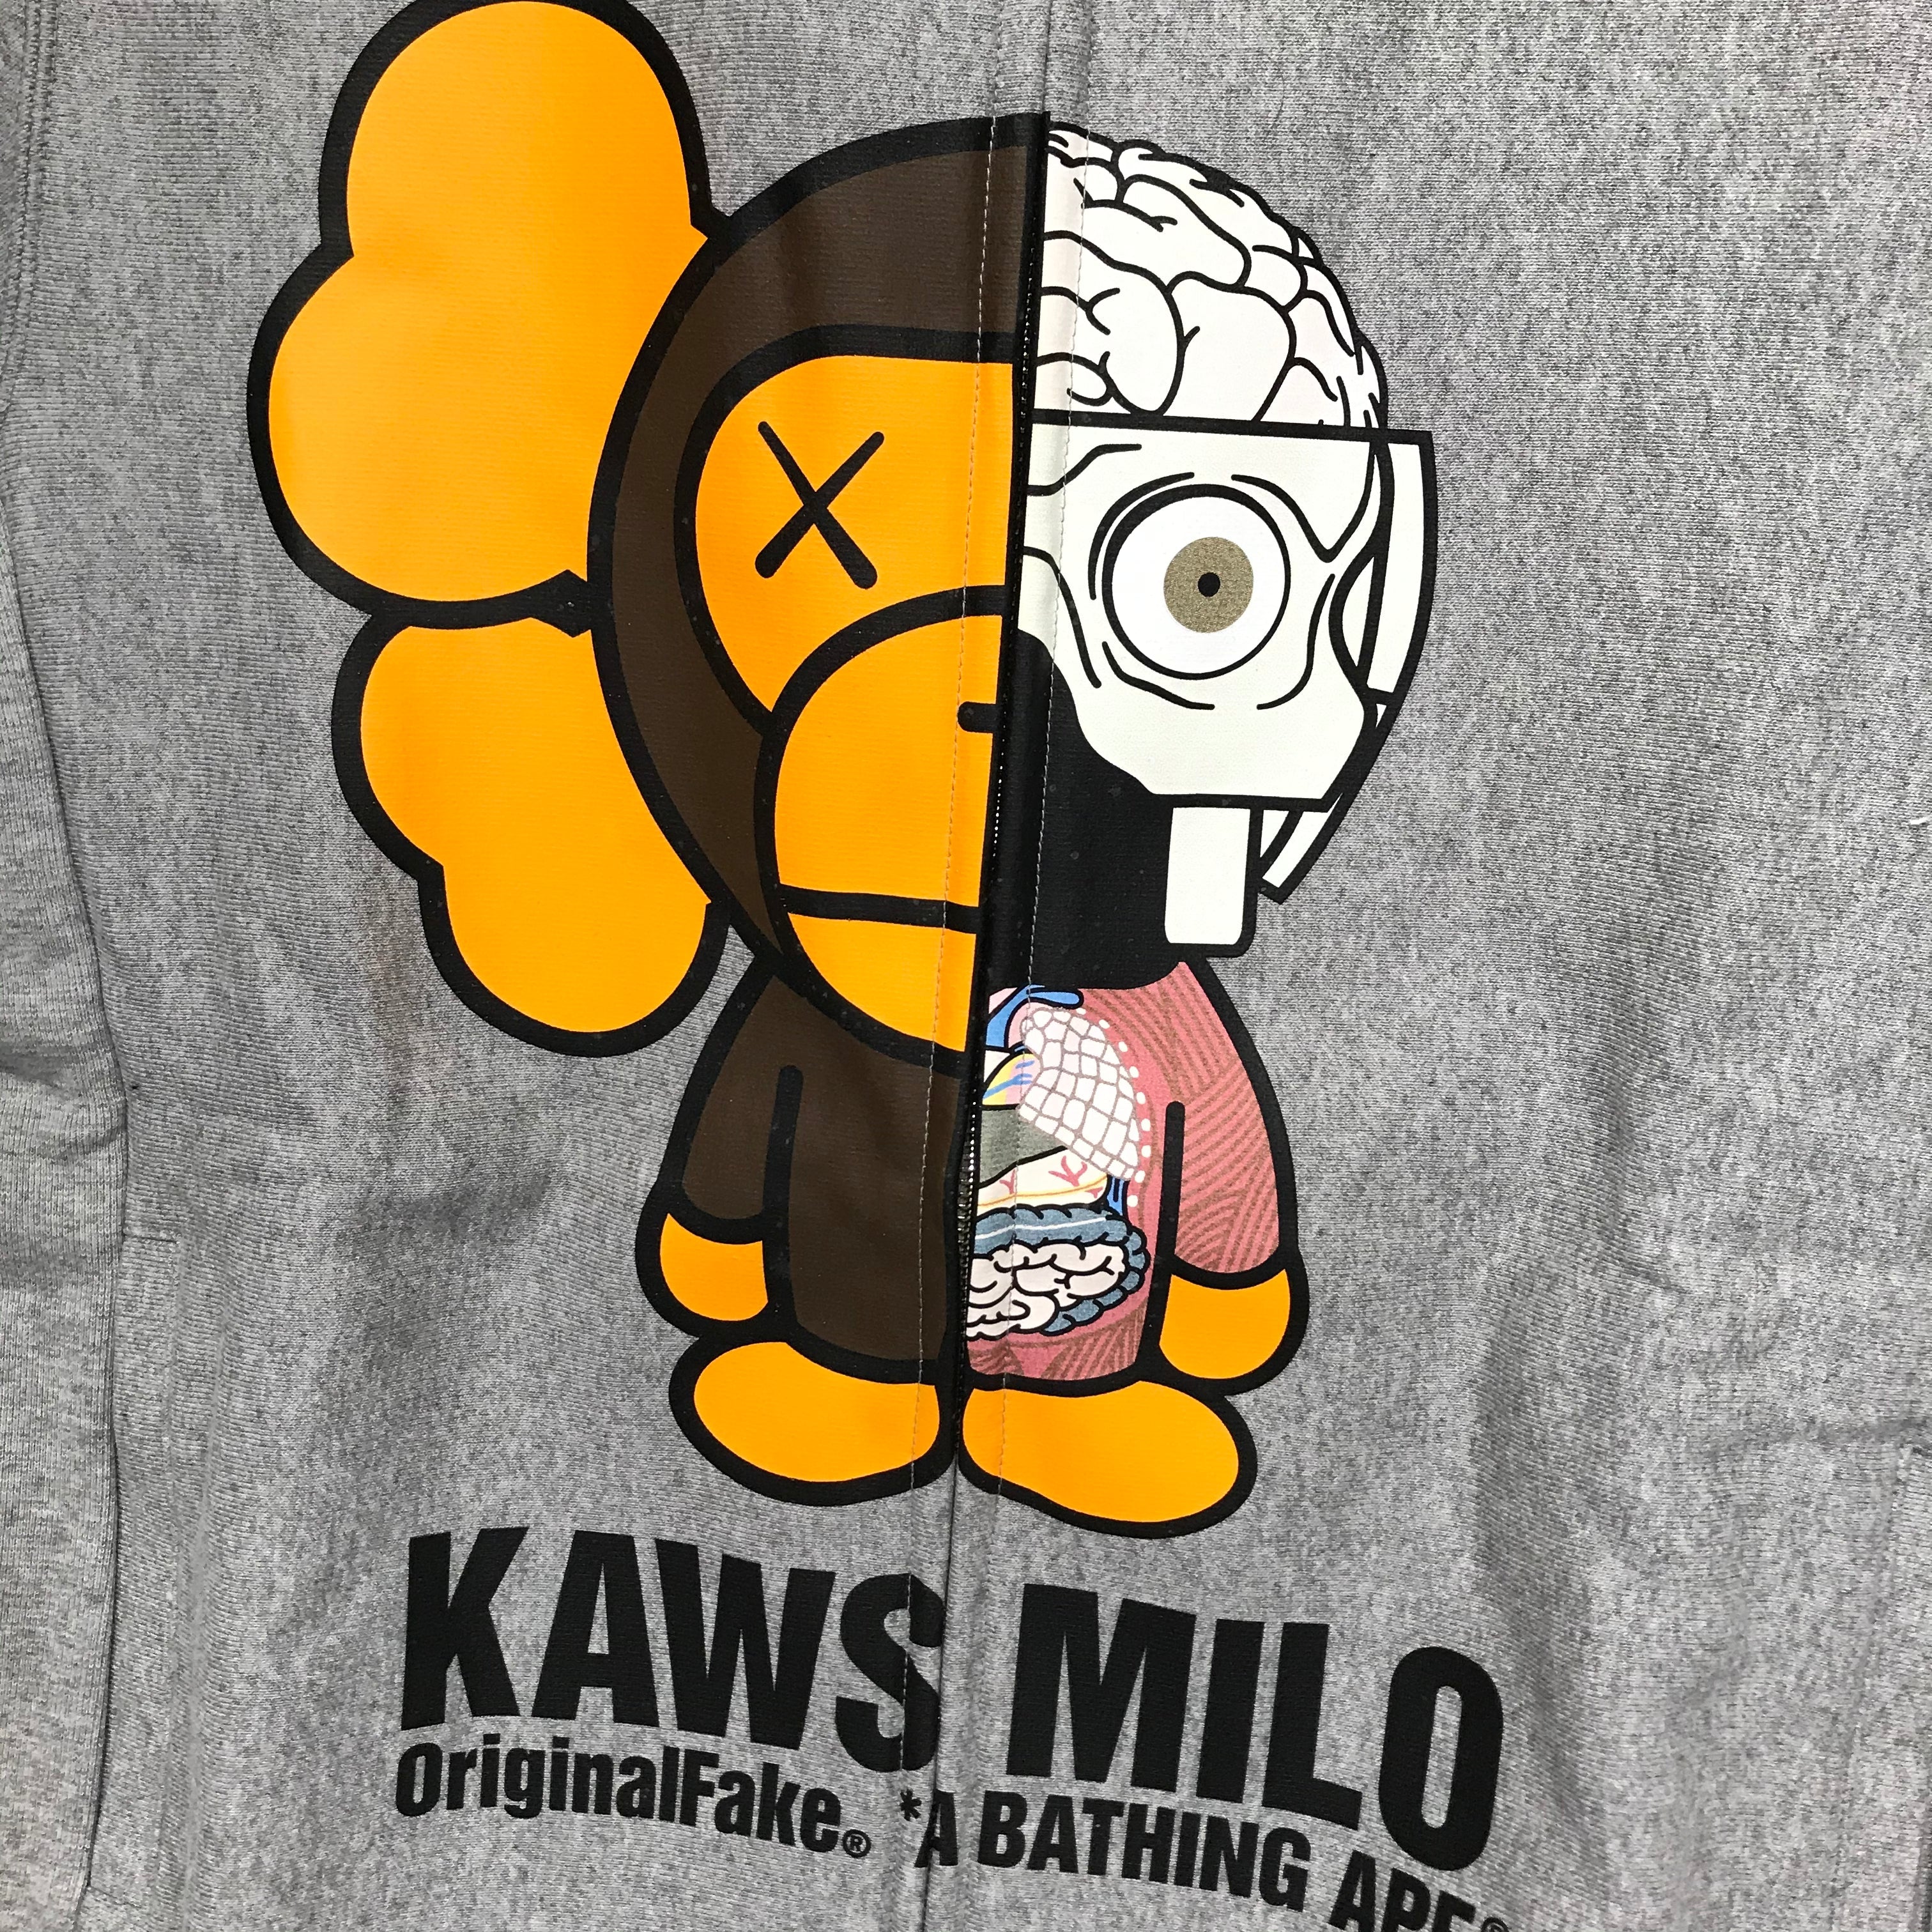 [M] DS! A Bathing Ape Bape Kaws Original Fake Baby Milo